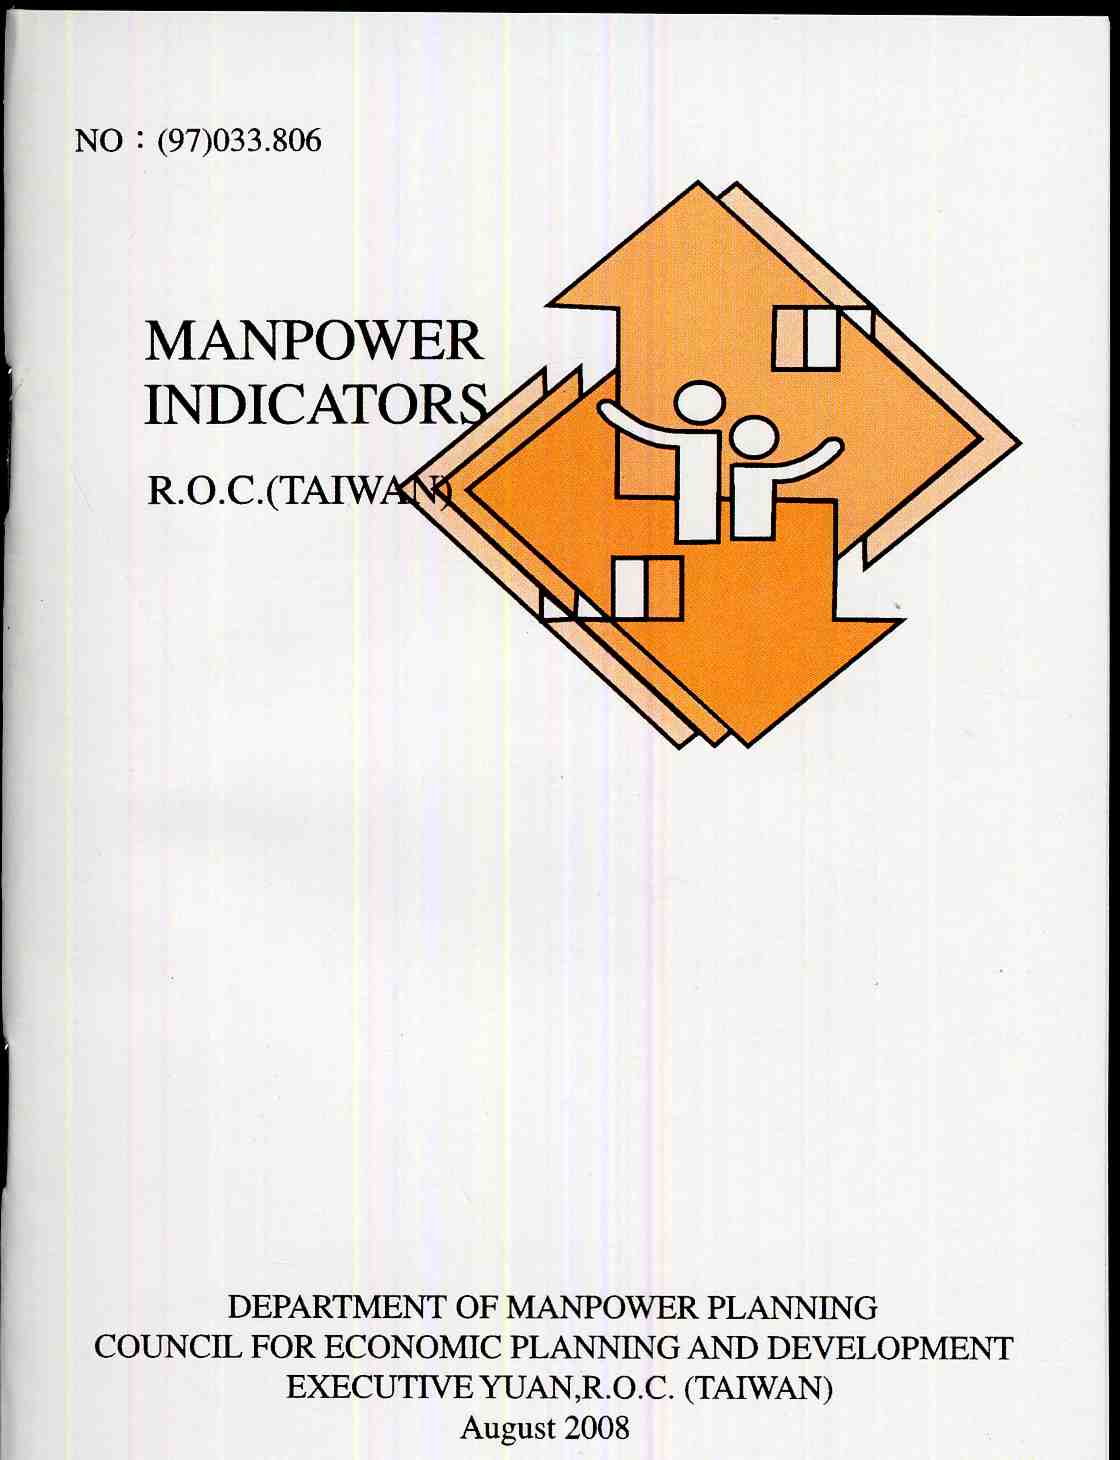 Manpower indicators, Taiwan, Republic of China